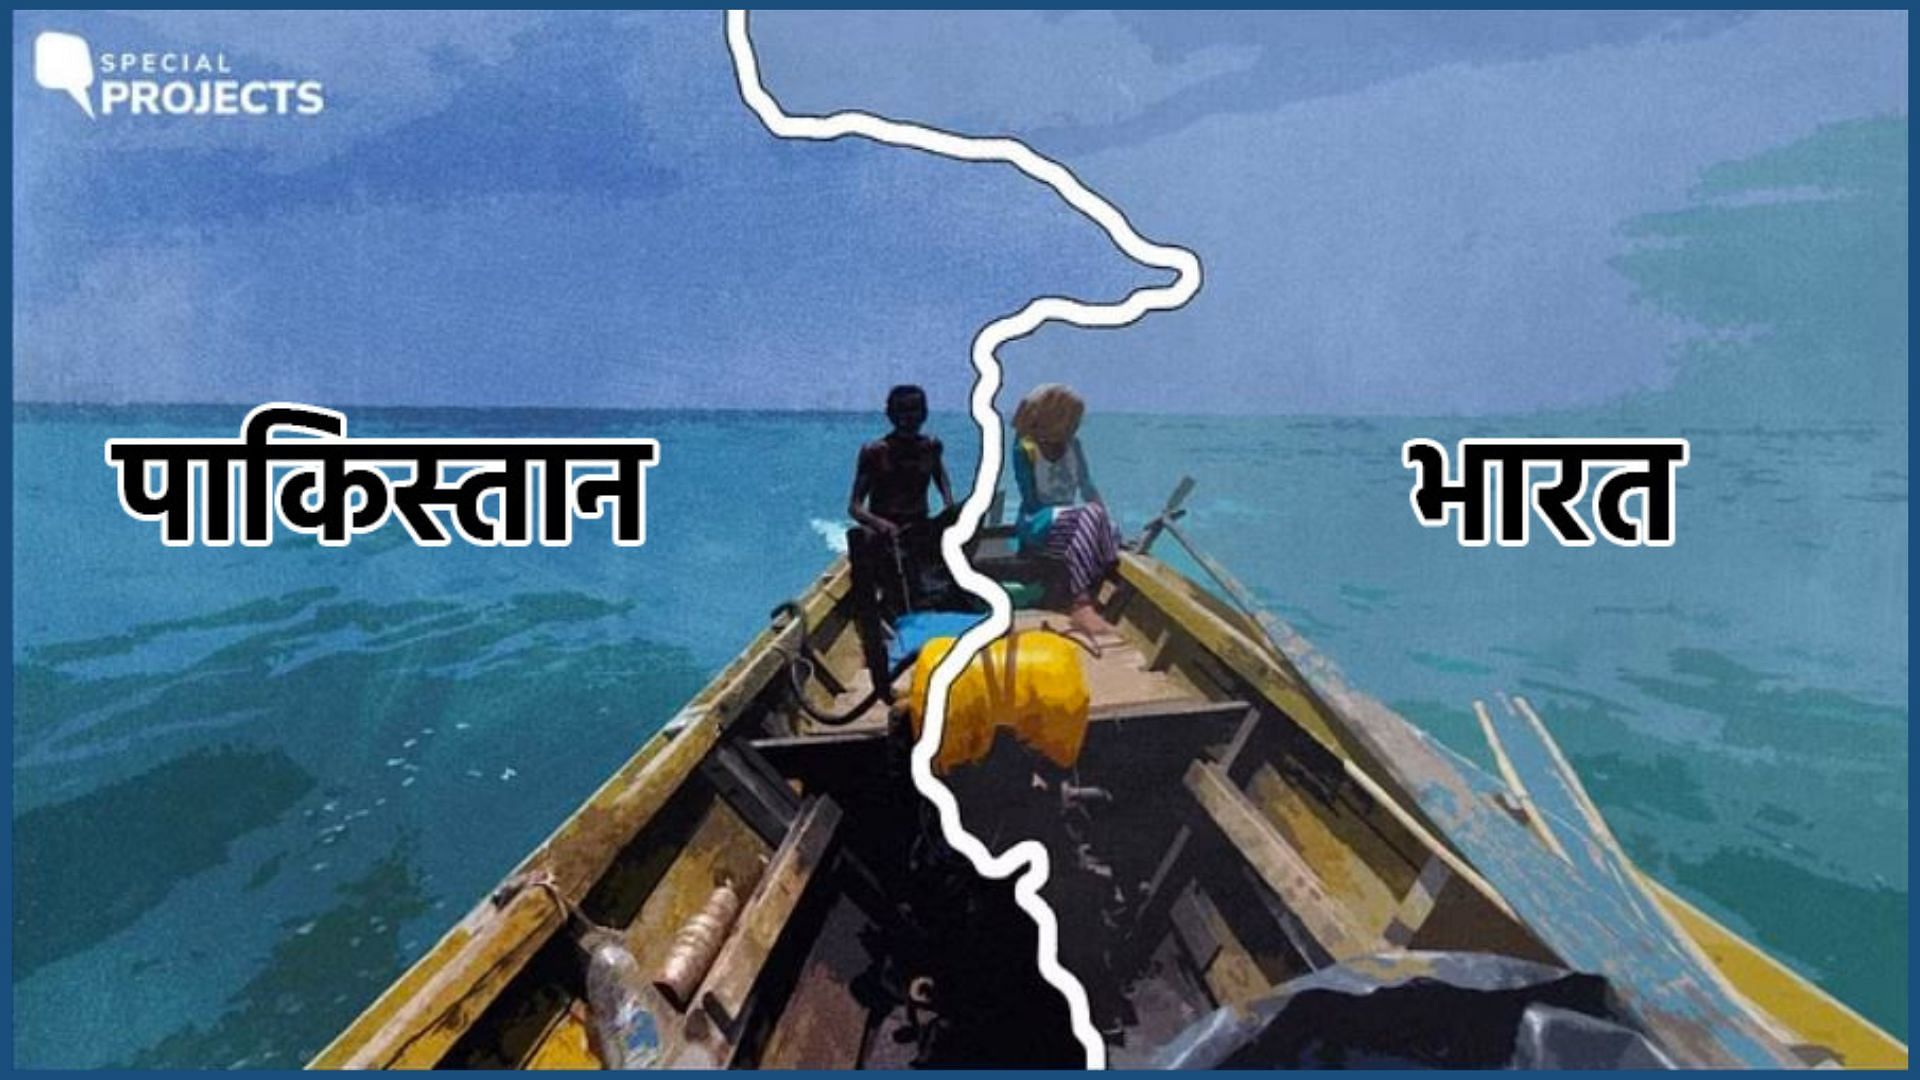 <div class="paragraphs"><p>सरहद के 'जाल' में मछुआरे: भारत-पाक संघर्ष में फंसे मछुआरों की कहानी</p></div>